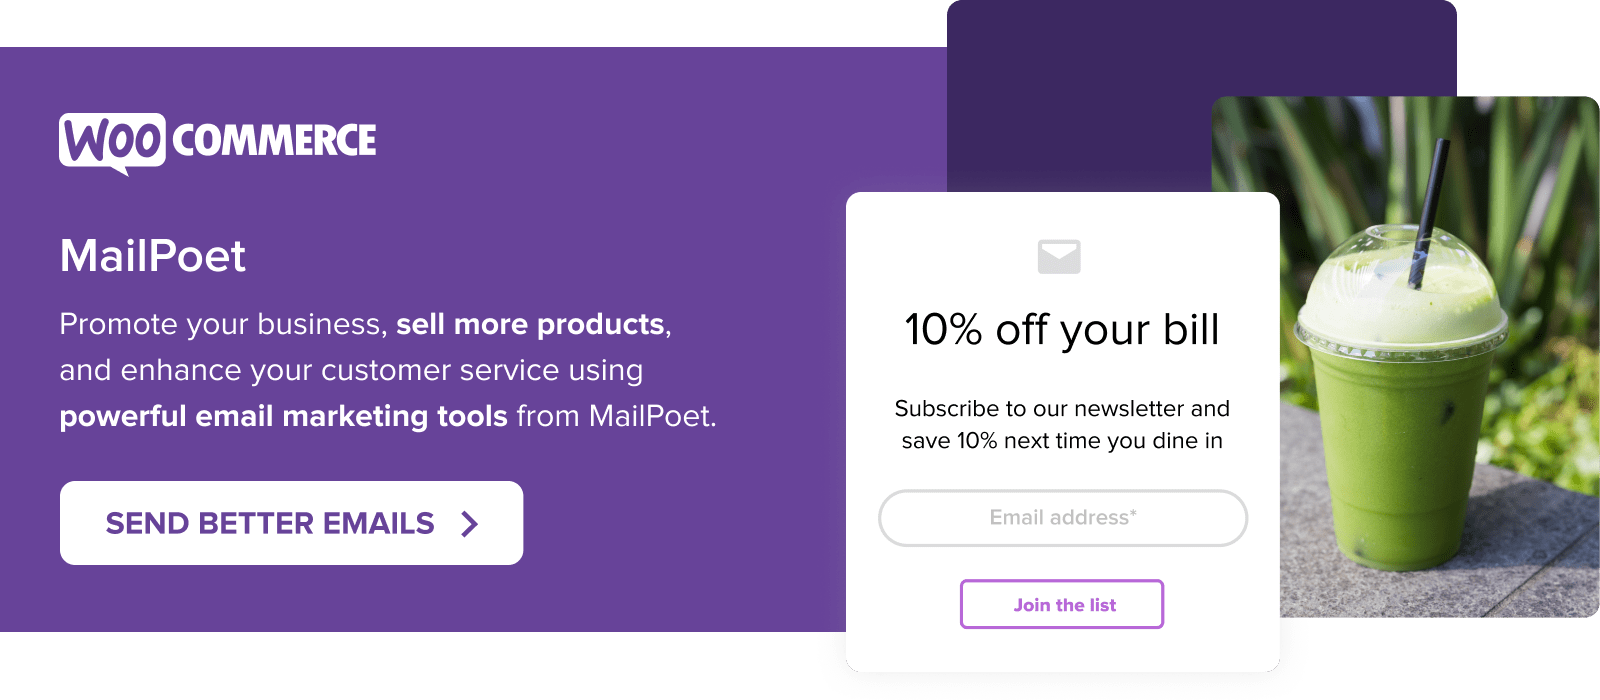 با ابزارهای ایمیل مارکتینگ MailPoet، کسب و کار خود را تبلیغ کنید و محصولات بیشتری بفروشید